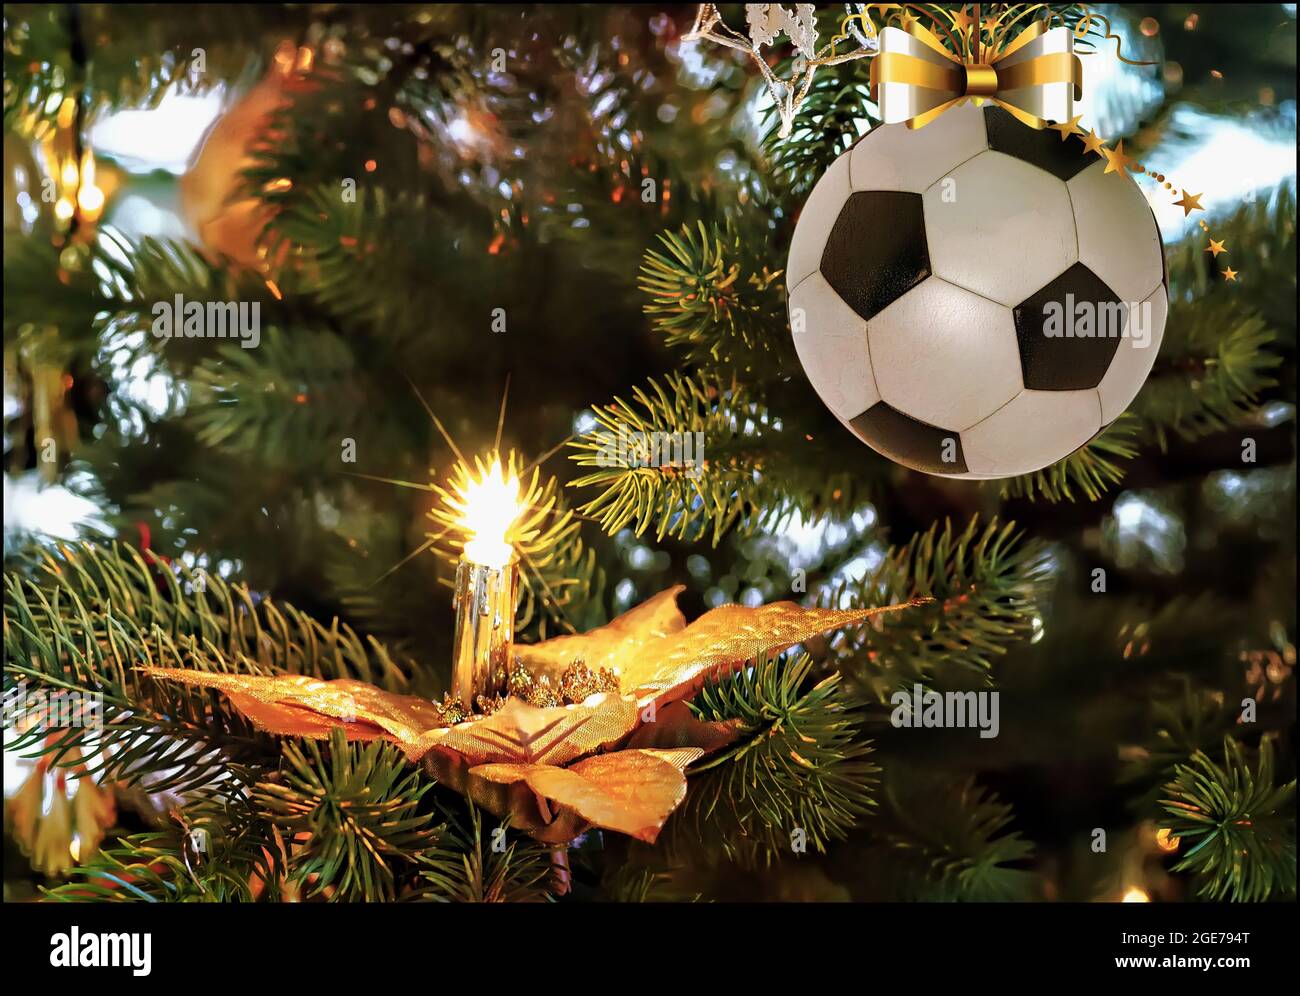 Fußball-weihnachtskugel, die auf dem Tannenzweig hängt. Weihnachtsgrüße Stockfoto